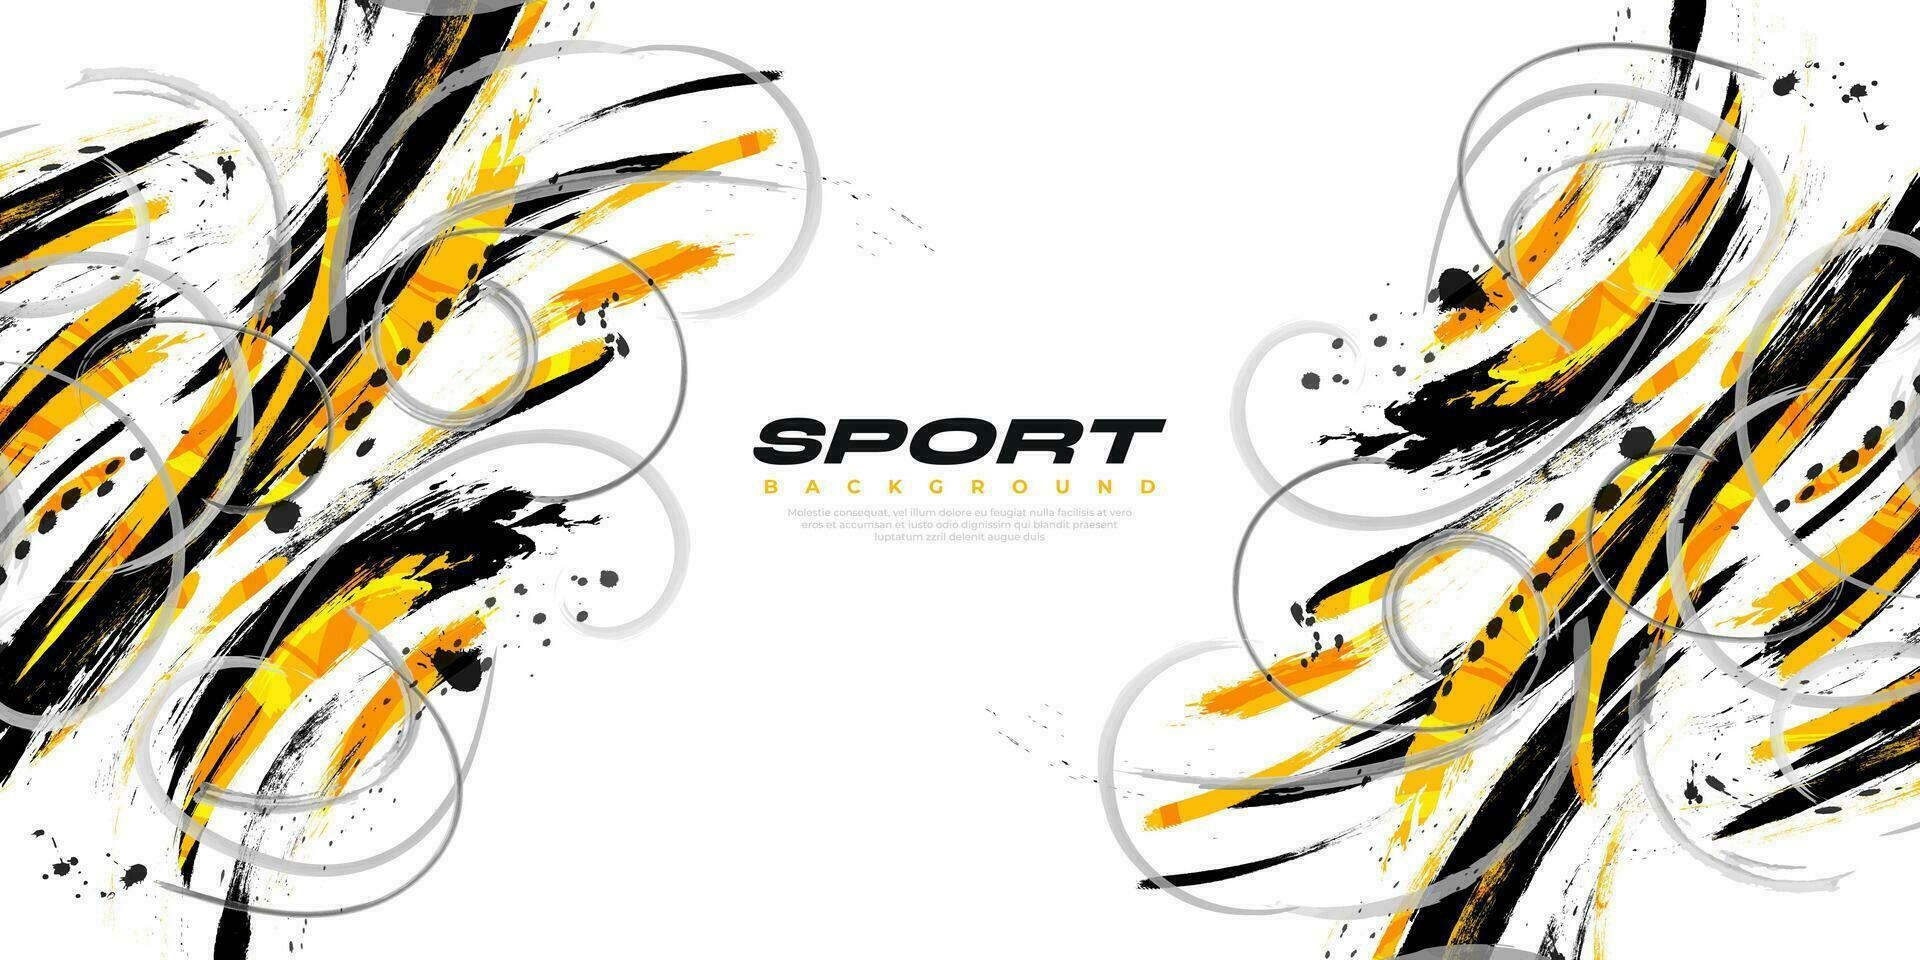 zwart, oranje en grijs borstel illustratie met halftone effect. sport achtergrond met grunge stijl. krassen en structuur elementen voor ontwerp vector